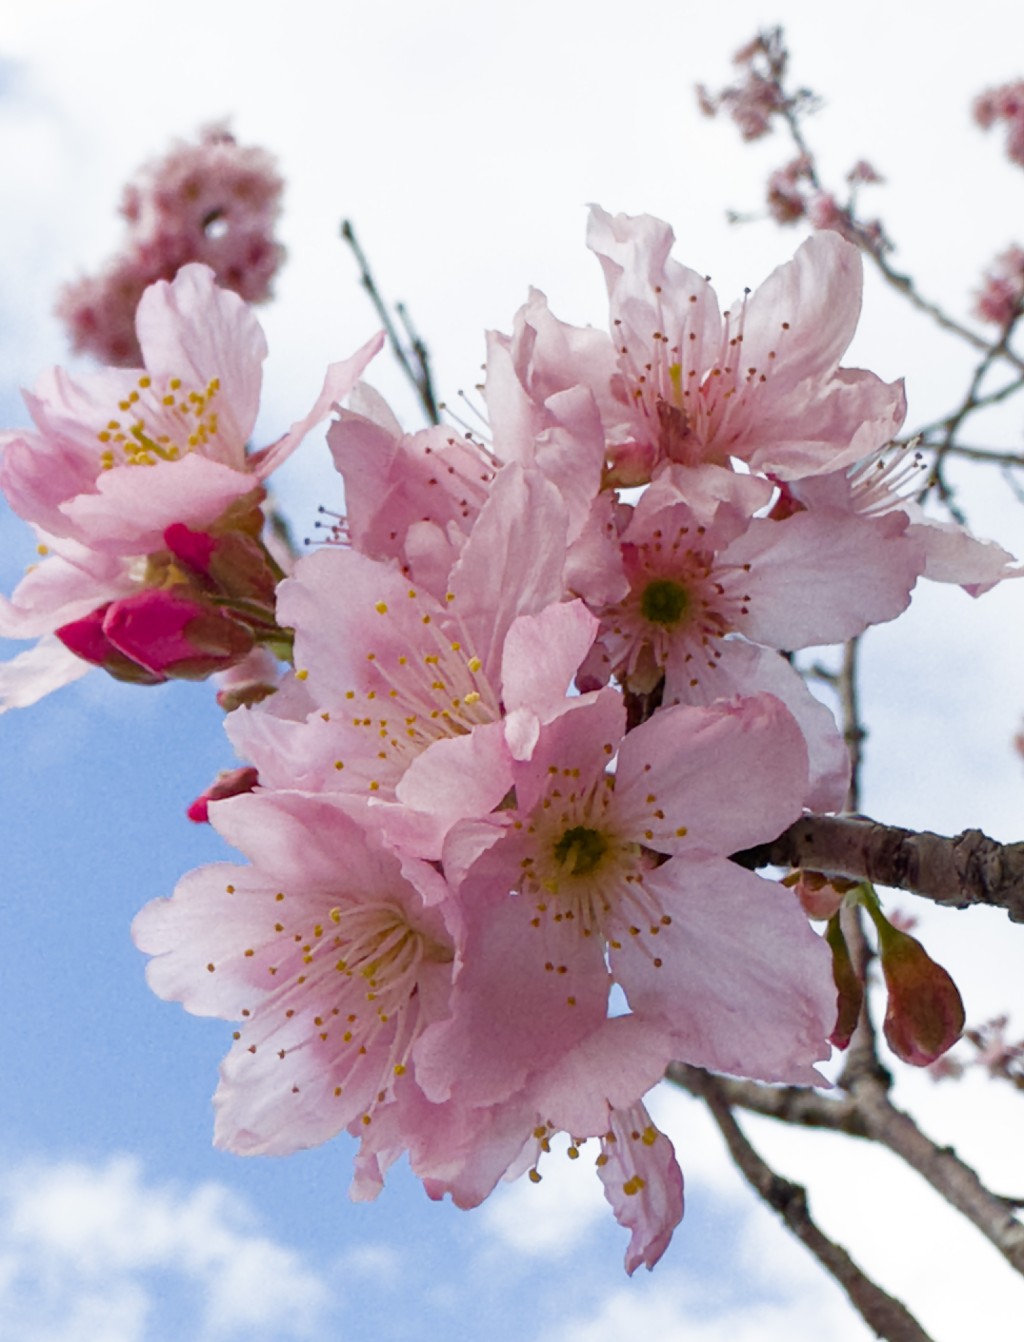 拍摄樱花小贴士：樱花衬托不同背景，例如蓝天、河畔或建筑物，会增添趣味。